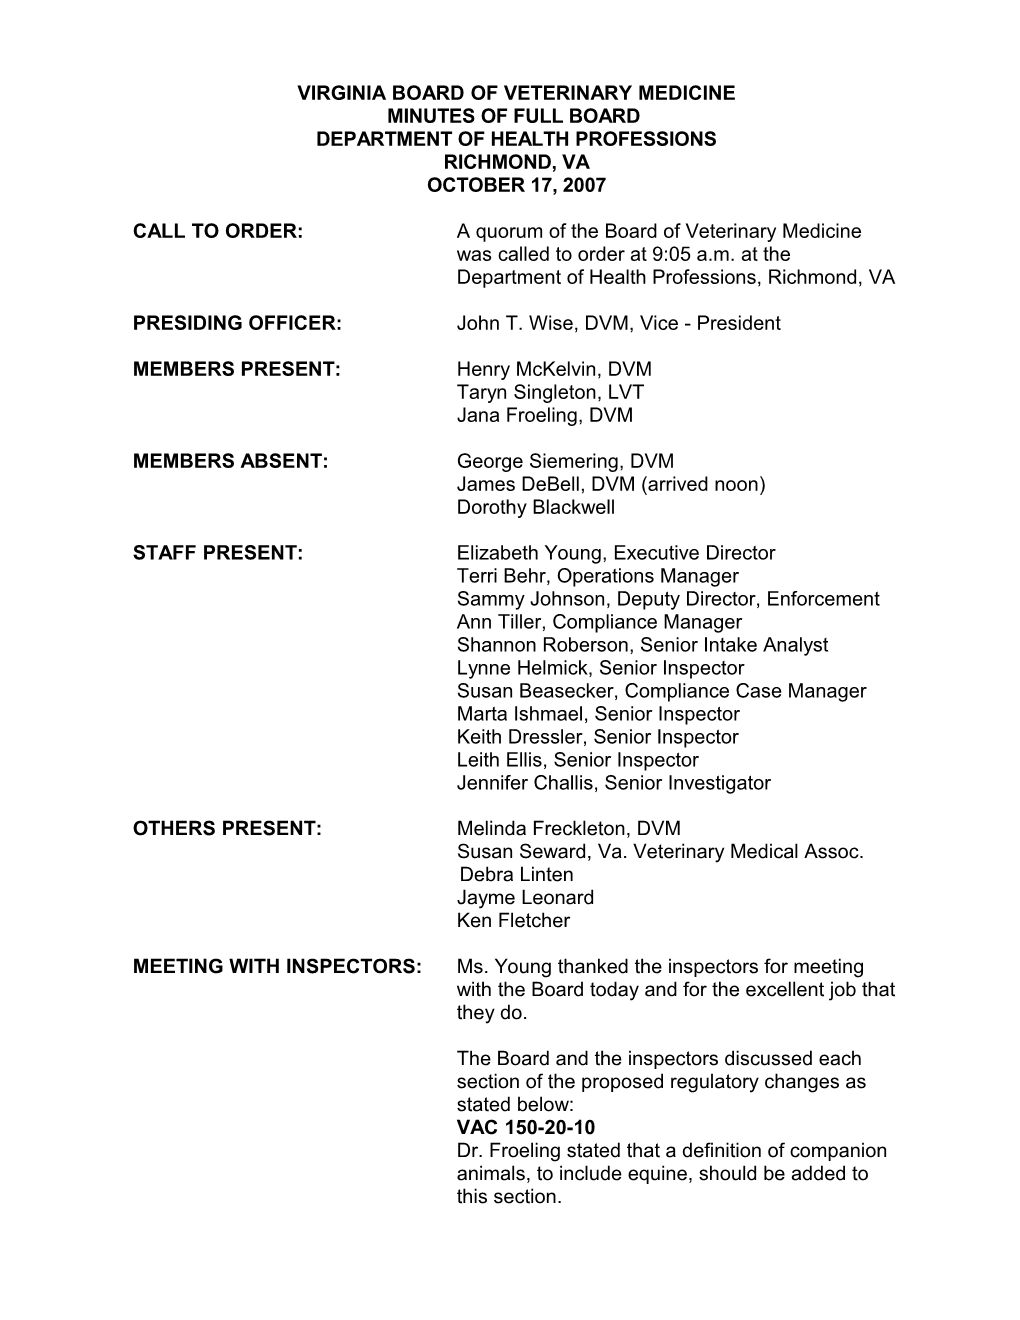 Board of Veterinary Medicine - October 17, 2007 Minutes